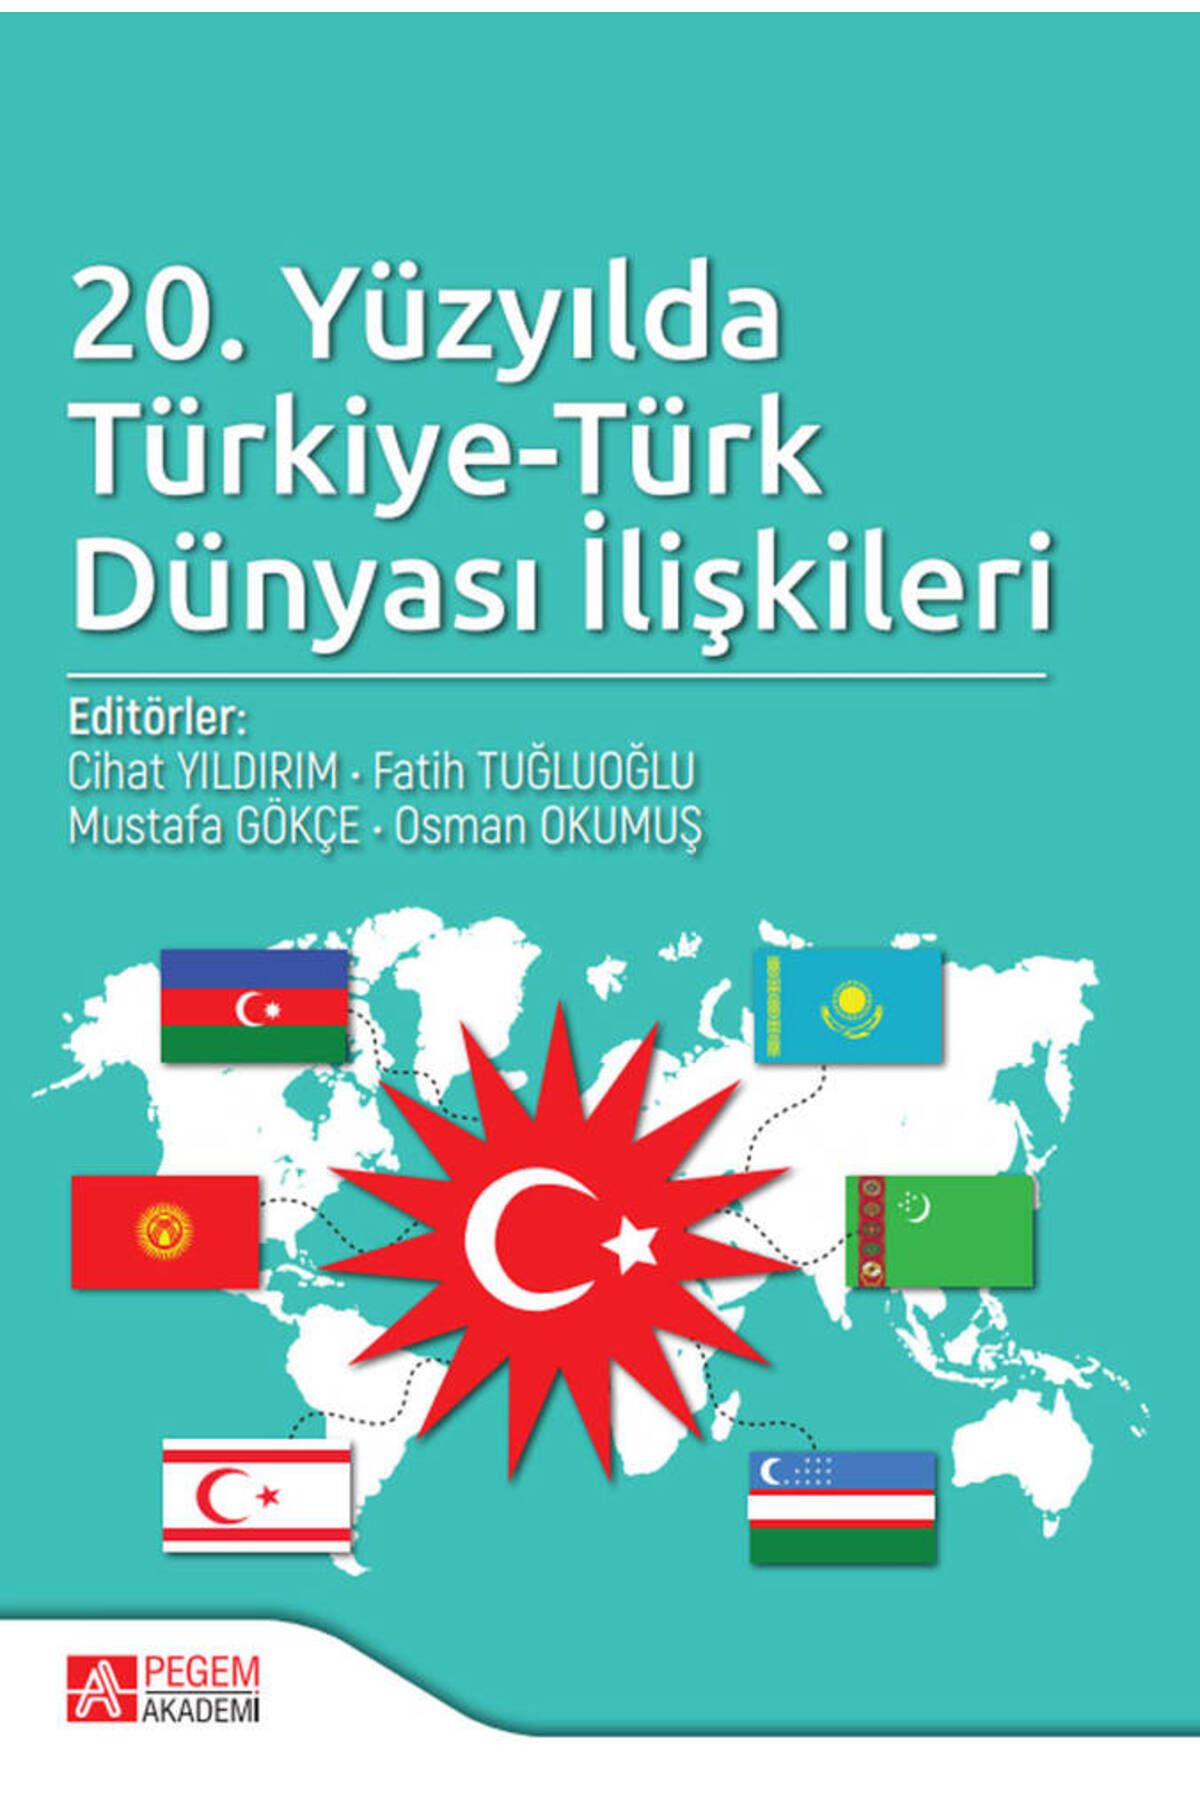 Pegem Akademi Yayıncılık 20.yüzyılda Türkiye-türk Dünyası Ilişkileri